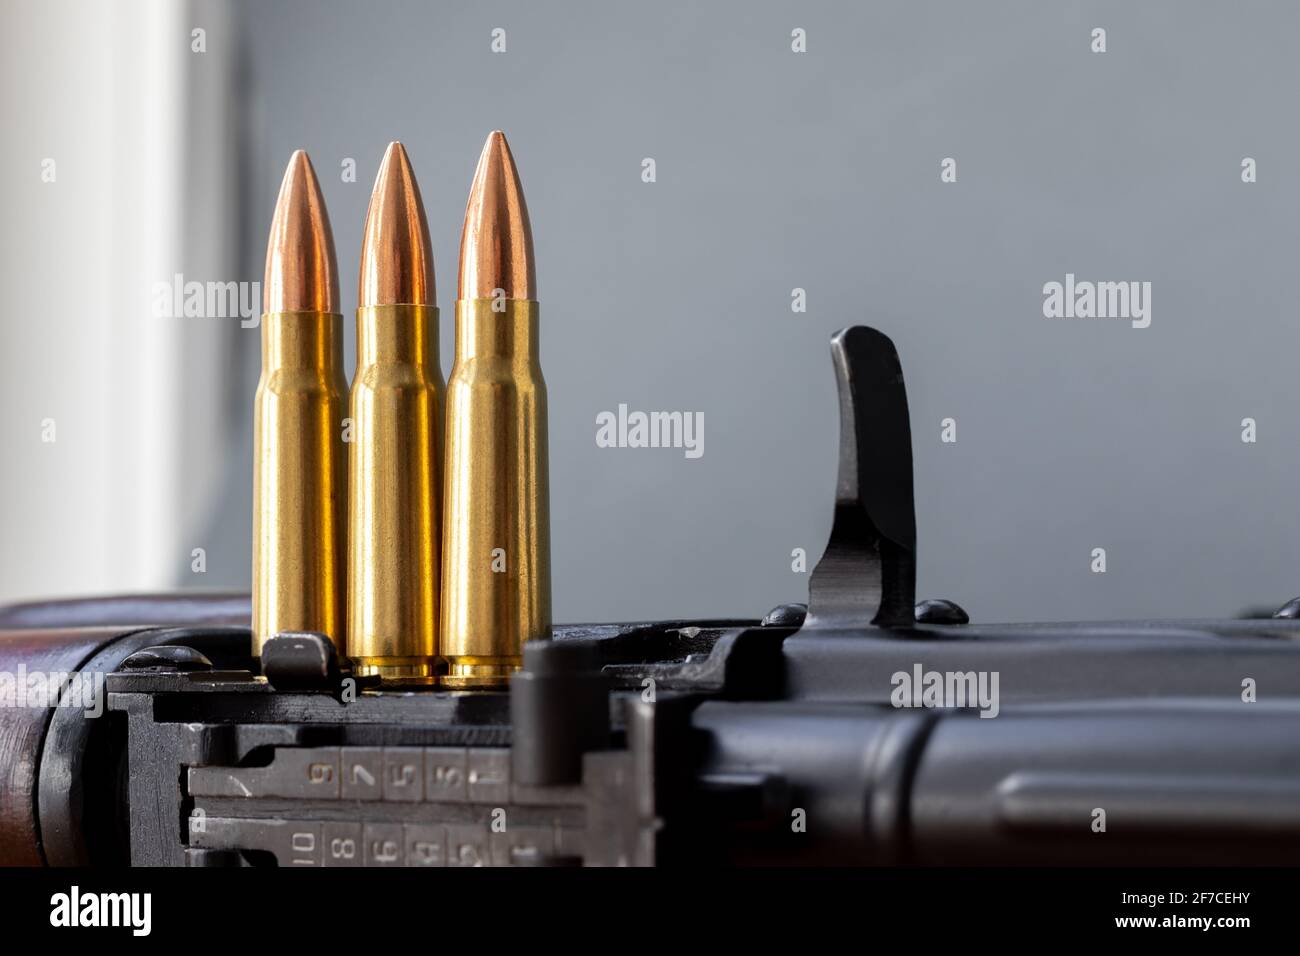 3,687 Ak 47 Bullet Images, Stock Photos, 3D objects, & Vectors